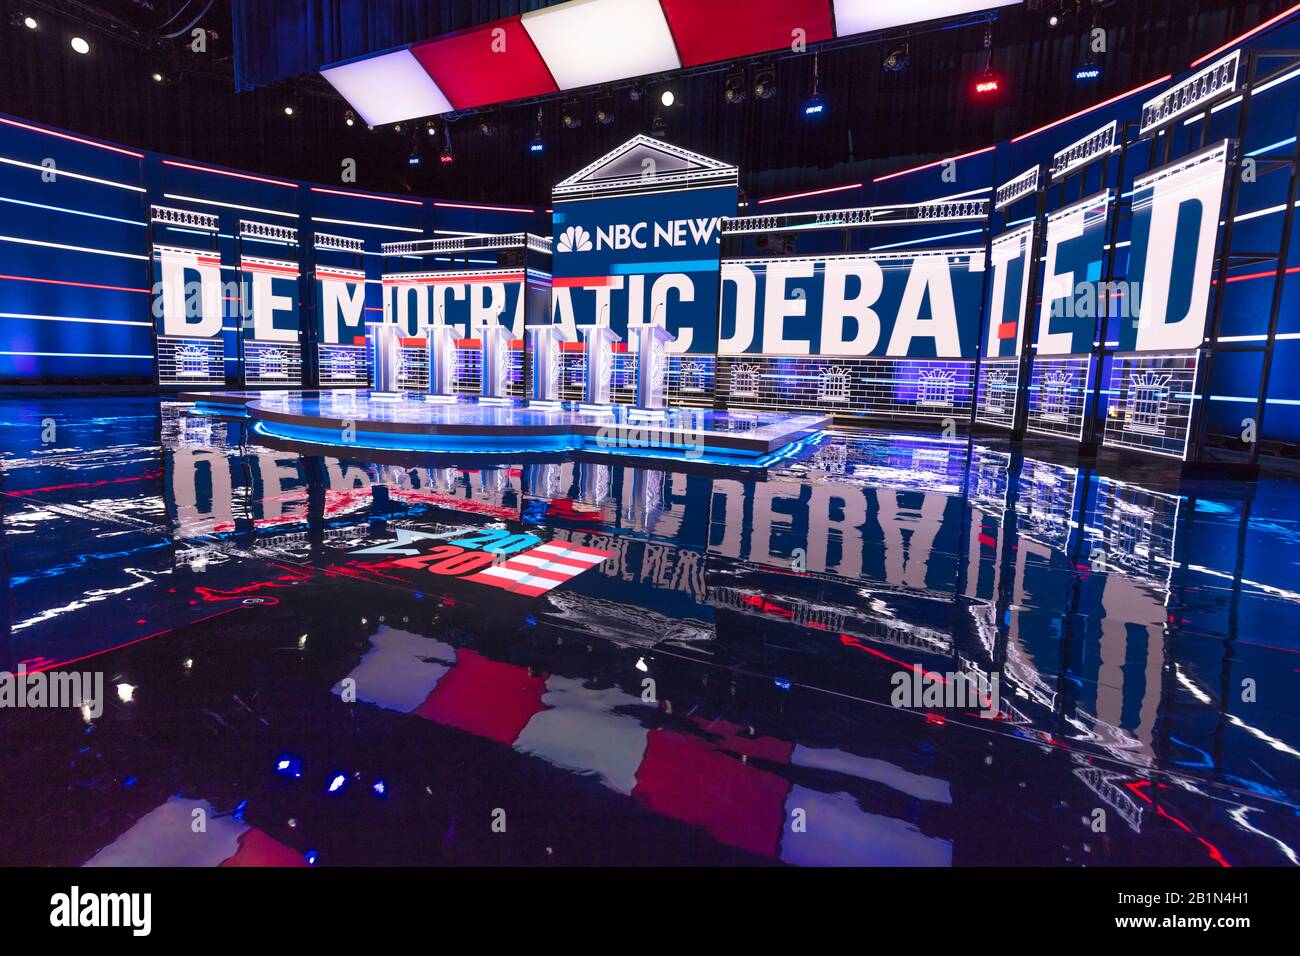 19 febbraio 2020, LAS VEGAS NEVADA, USA - fase di dibattito dei Candidati presidenziali democratici ospitata dalla NBC Television nel Teatro di Parigi, Las Vegas Foto Stock